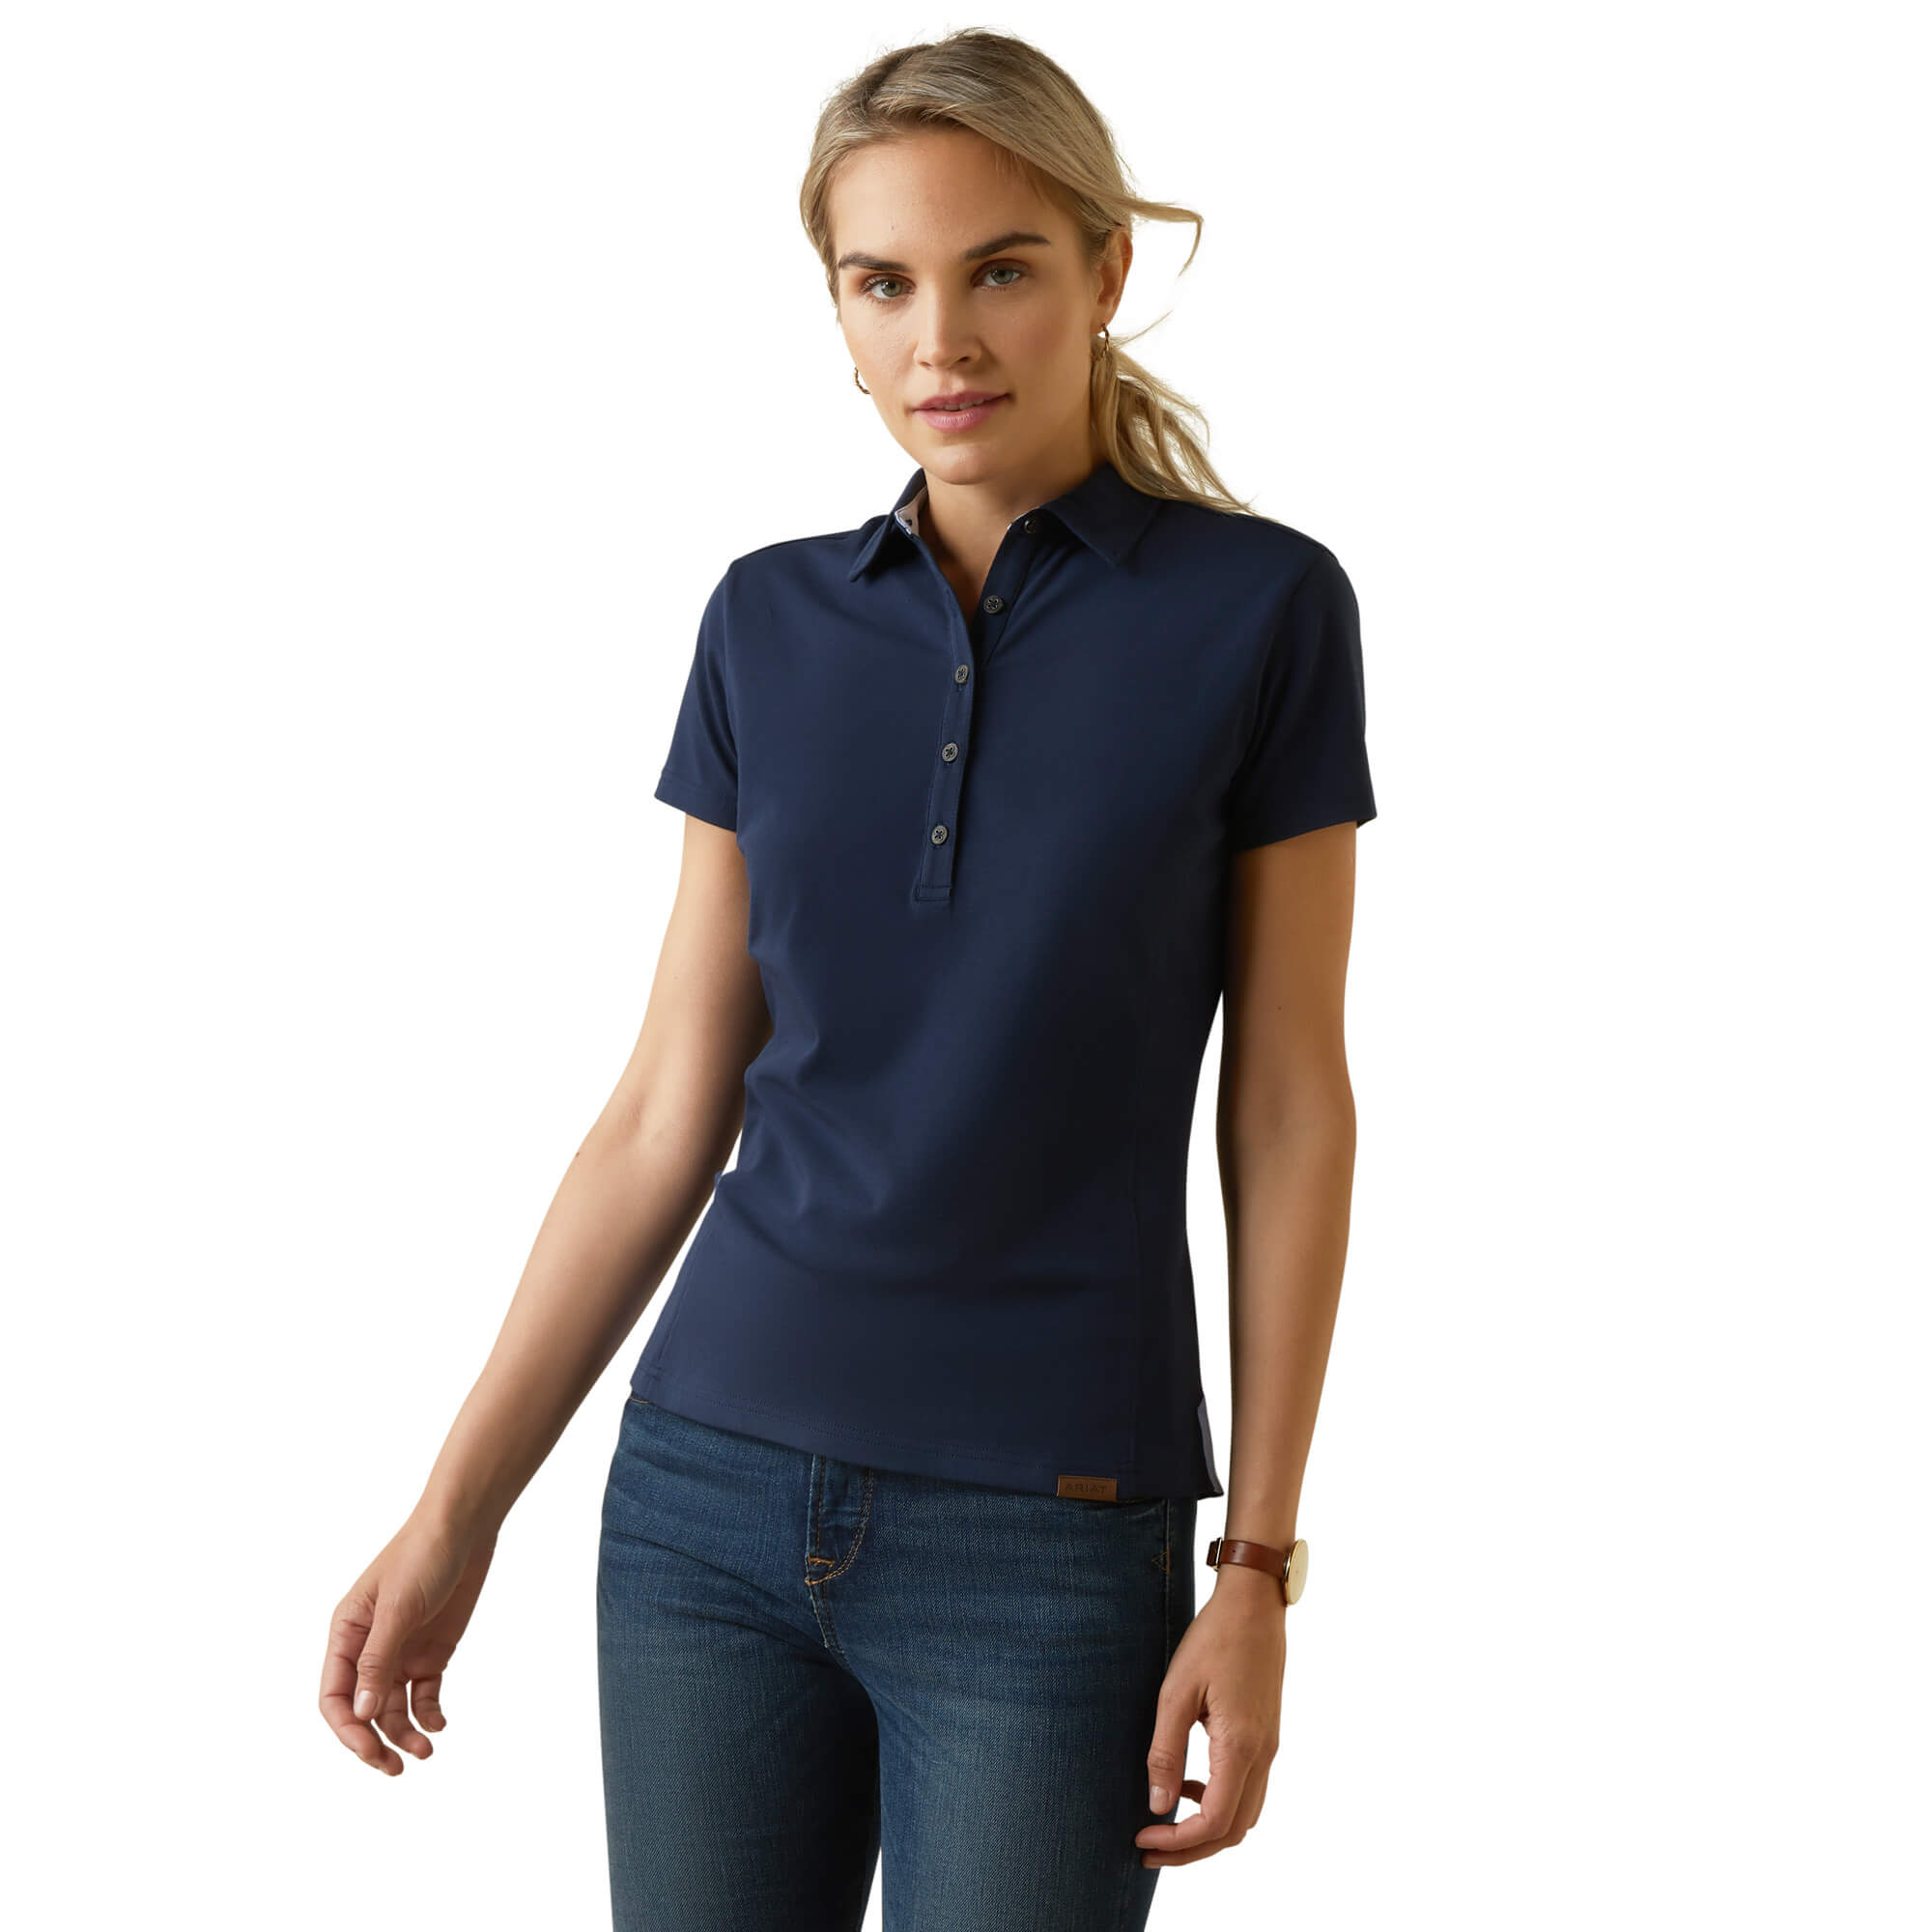 ARIAT klassisch schickes Damen Polo Shirt Cloverdale - navy - L - 2